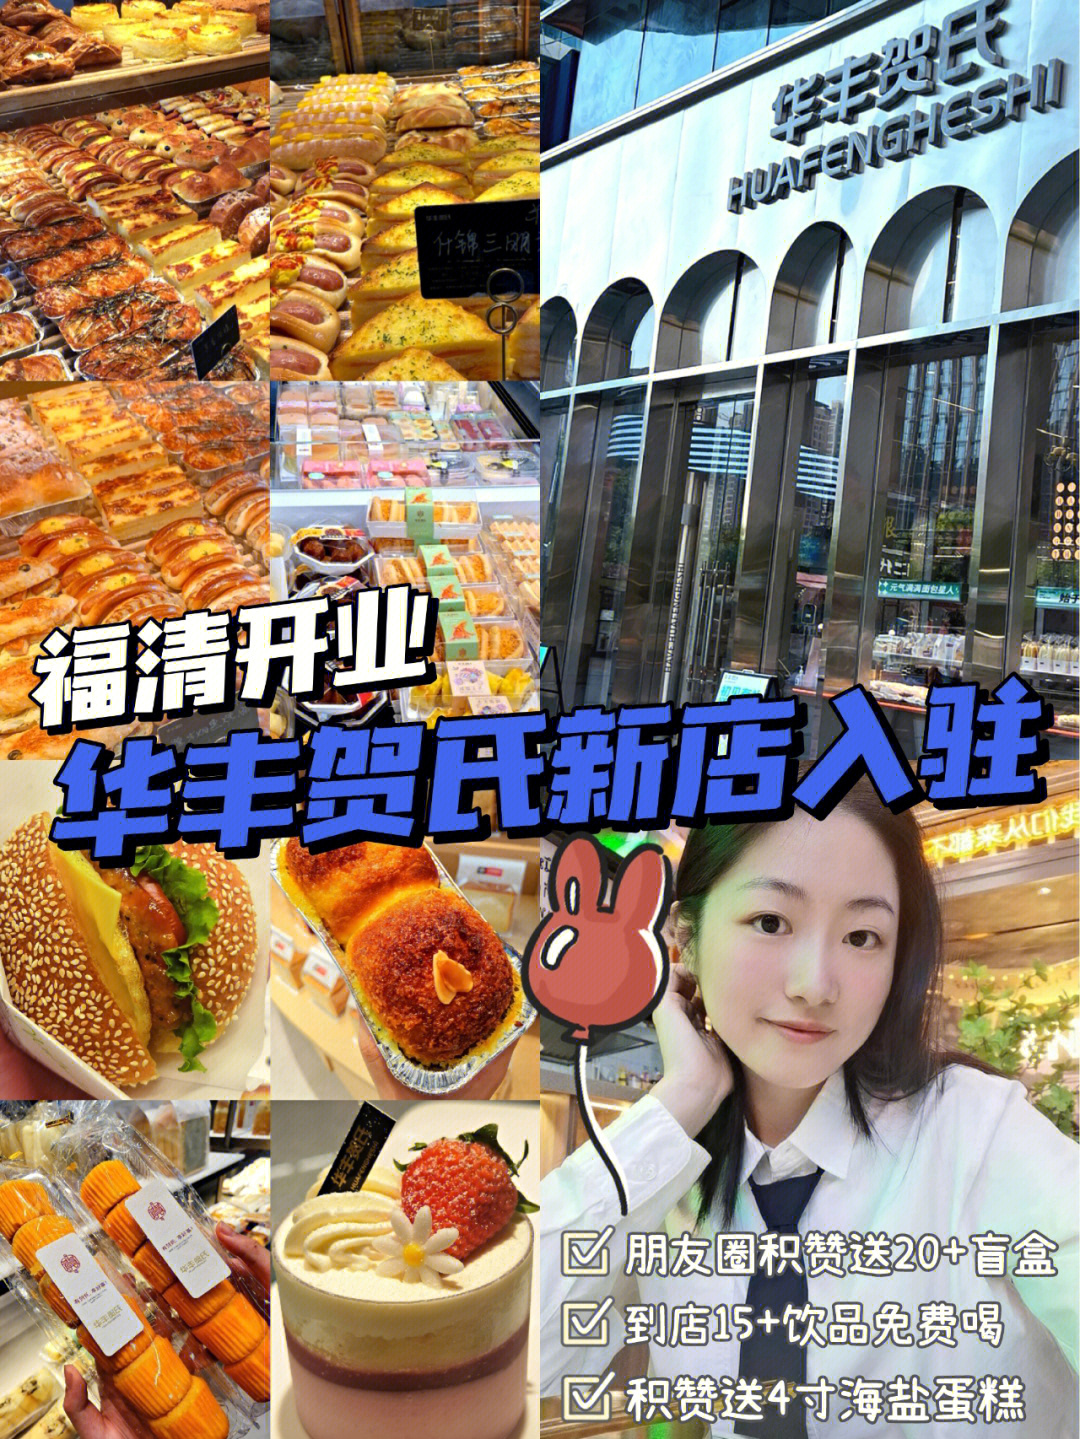 华丰贺氏终于开业啦6015店内超多面包92,糕点90种类选得眼花